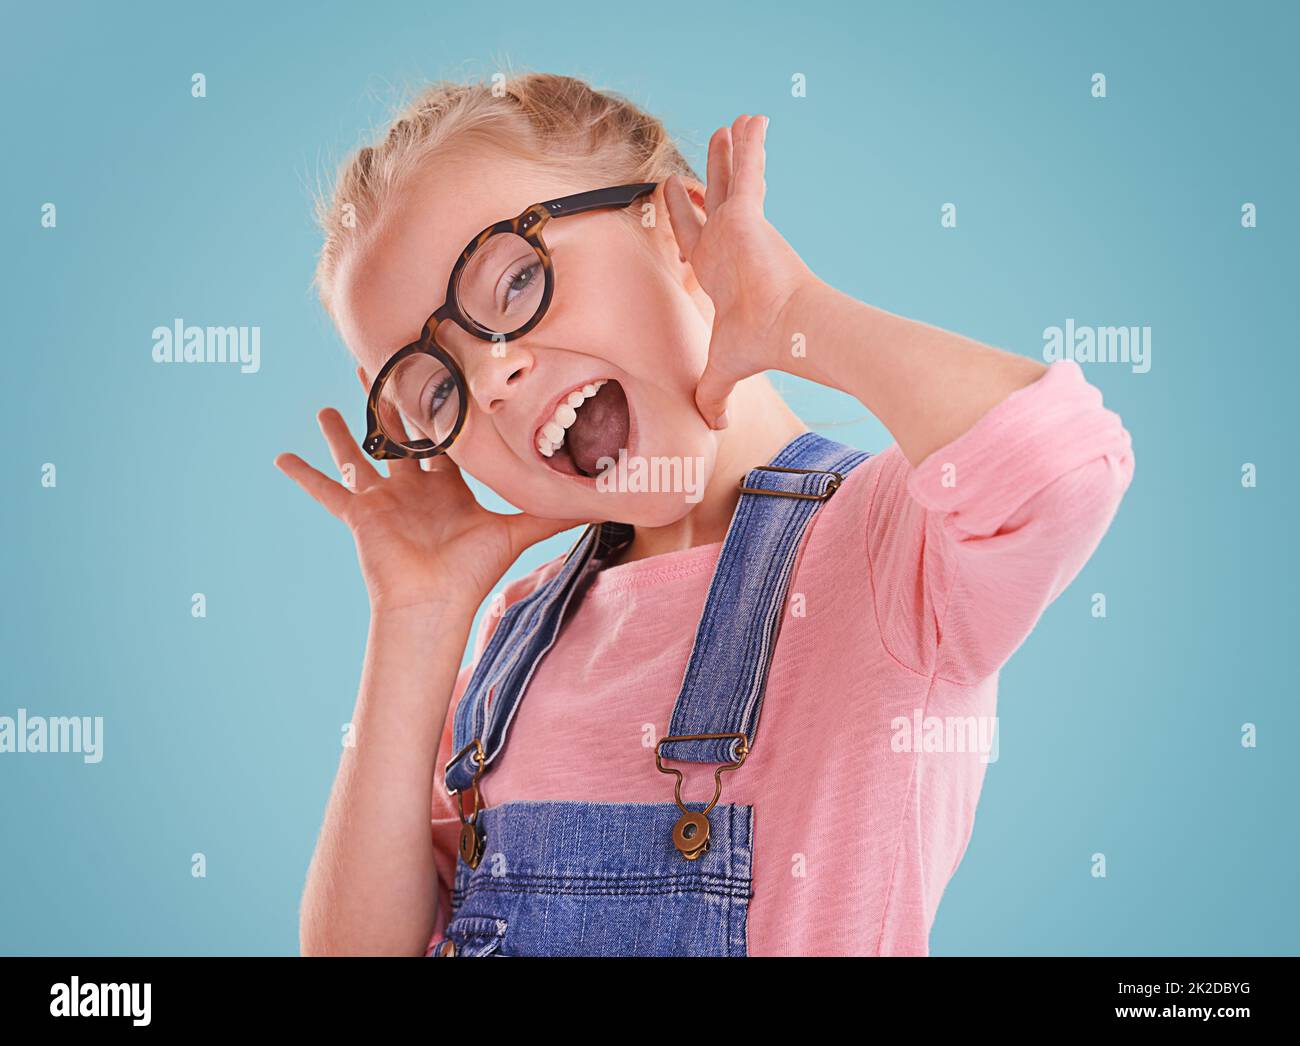 Diese Brille lässt mich niedlich fühlen. Studioaufnahme eines kleinen Mädchens mit einer Hipster-Brille auf blauem Hintergrund. Stockfoto